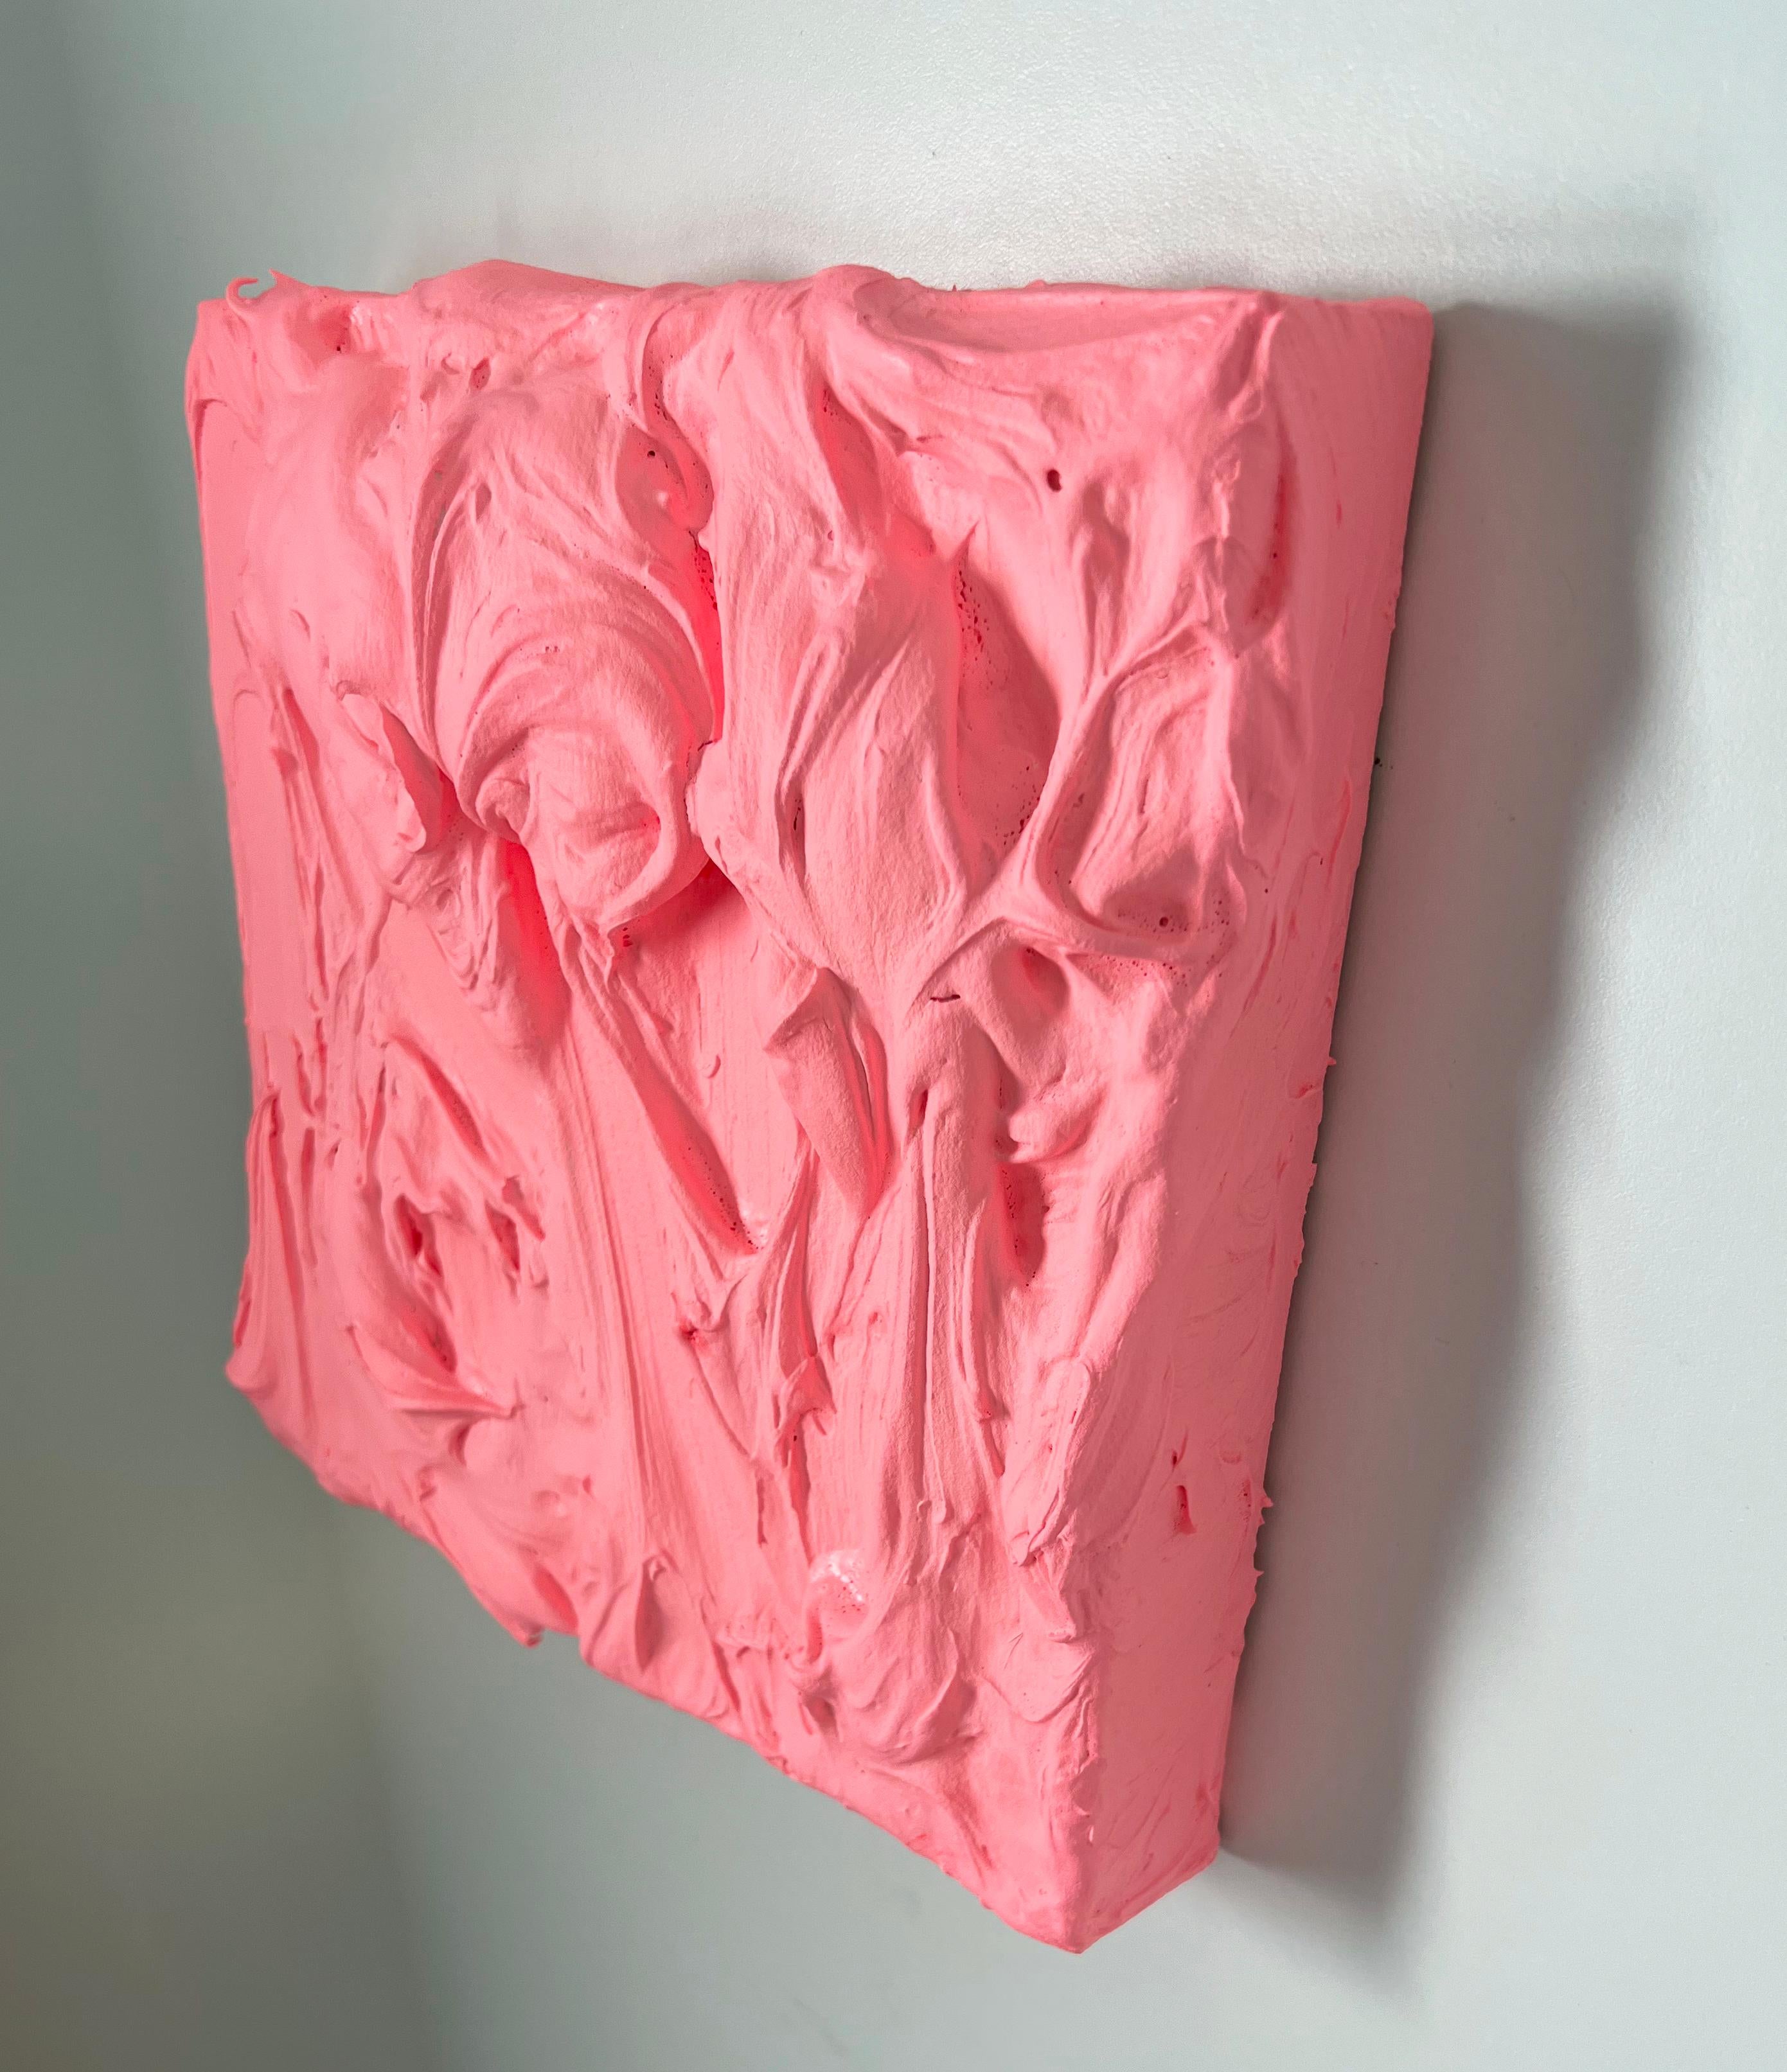  80er Pfirsich Excess (rosafarbenes, mehrfarbiges, monochromes, quadratisches Gemälde im Pop-Design) (Pop-Art), Painting, von Chloe Hedden